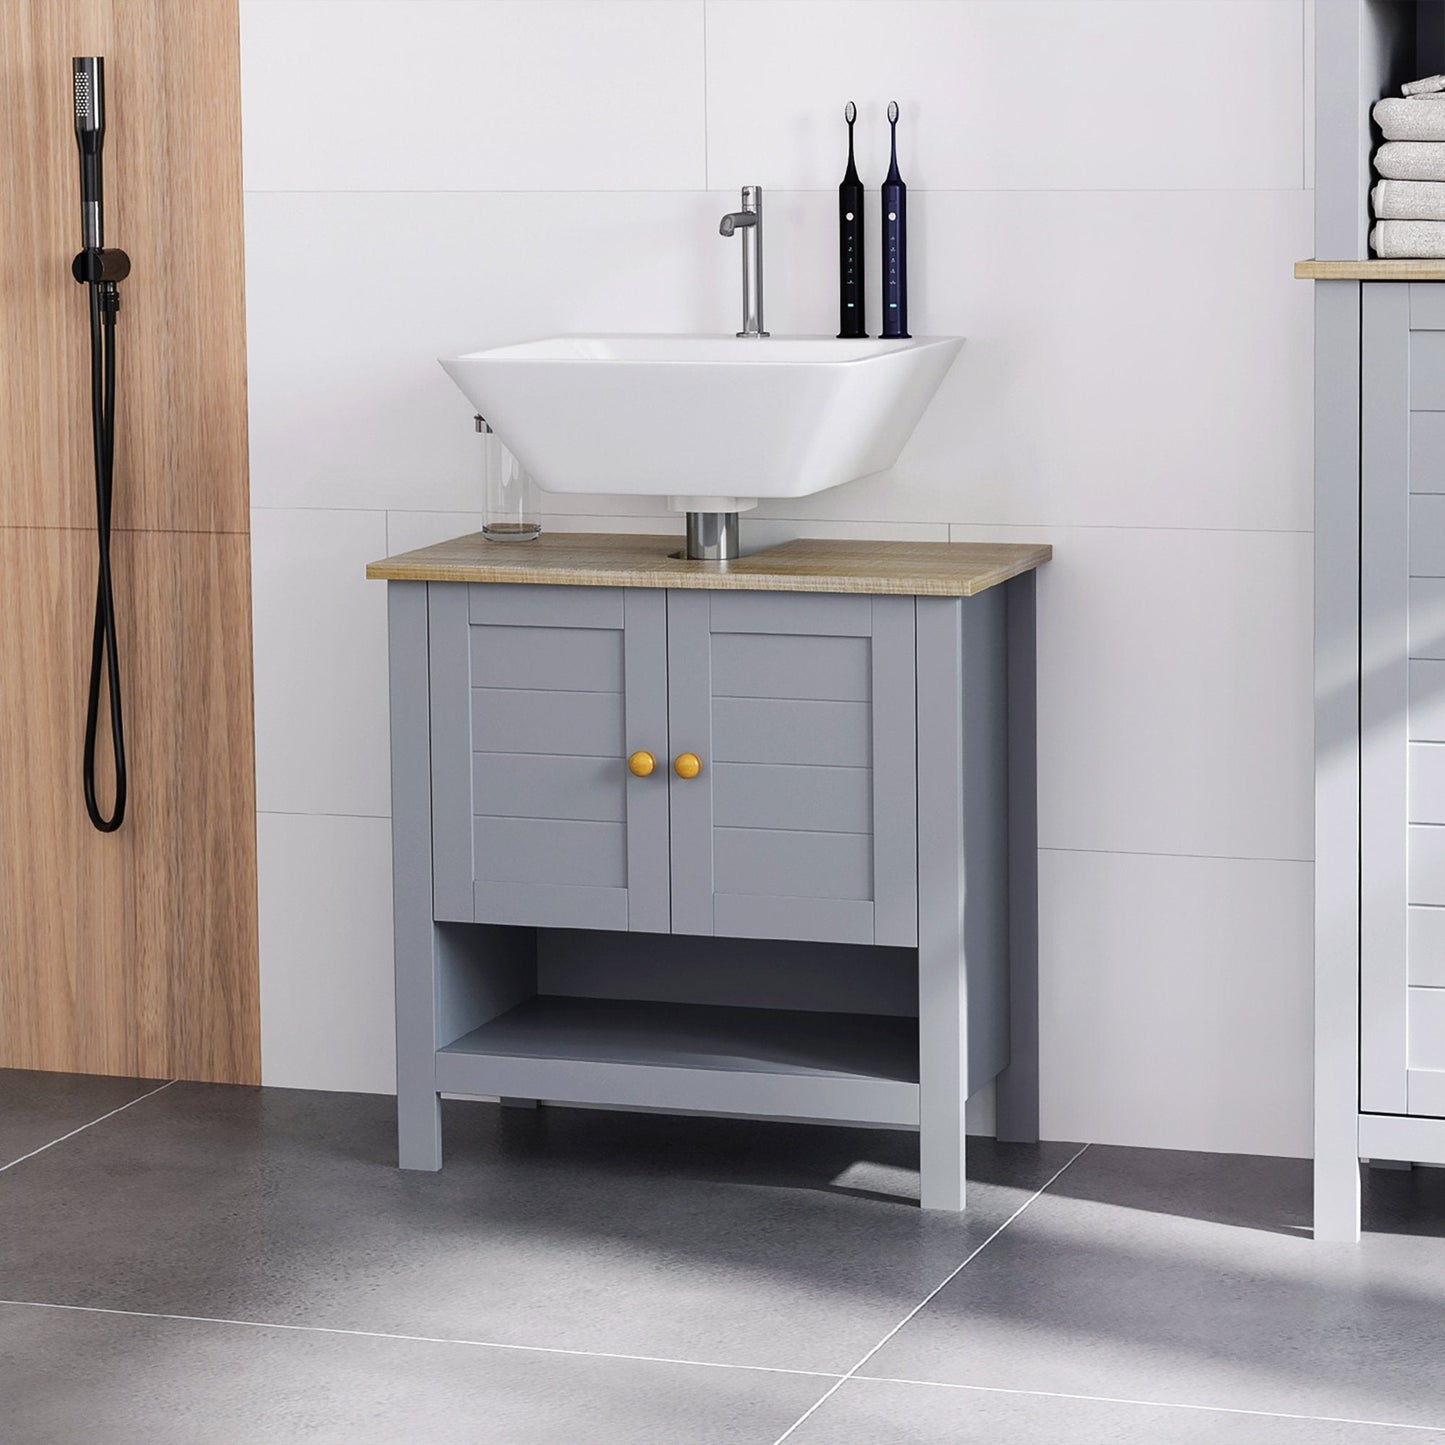 Bathroom Under Sink Cabinet Vanity Unit with Adjustable Shelf Space Saver 834-314V01